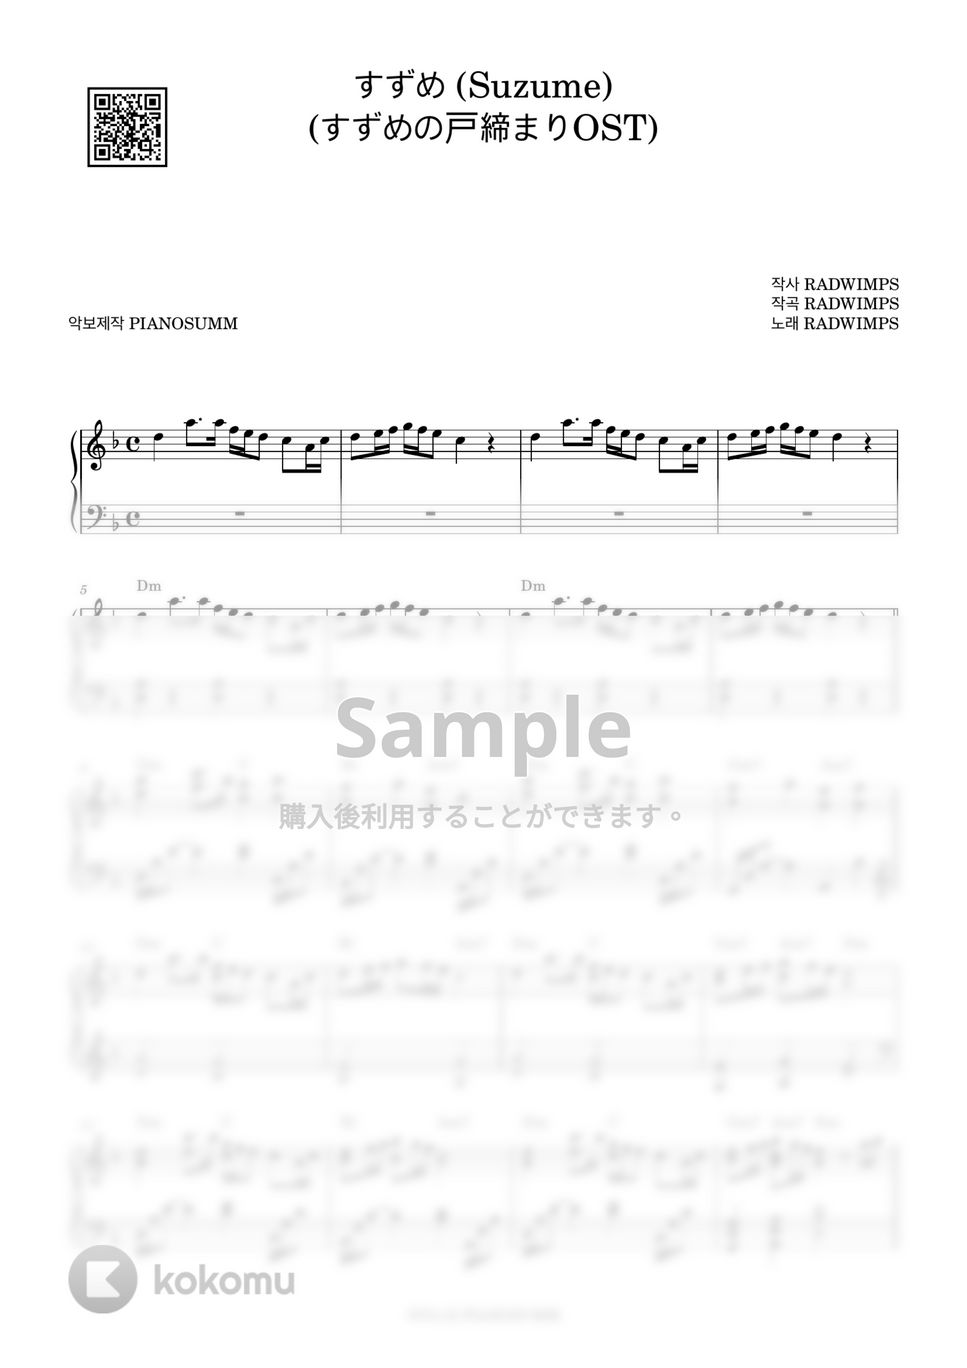 すずめの戸締まり OST - すずめ (Suzume) by PIANOSUMM